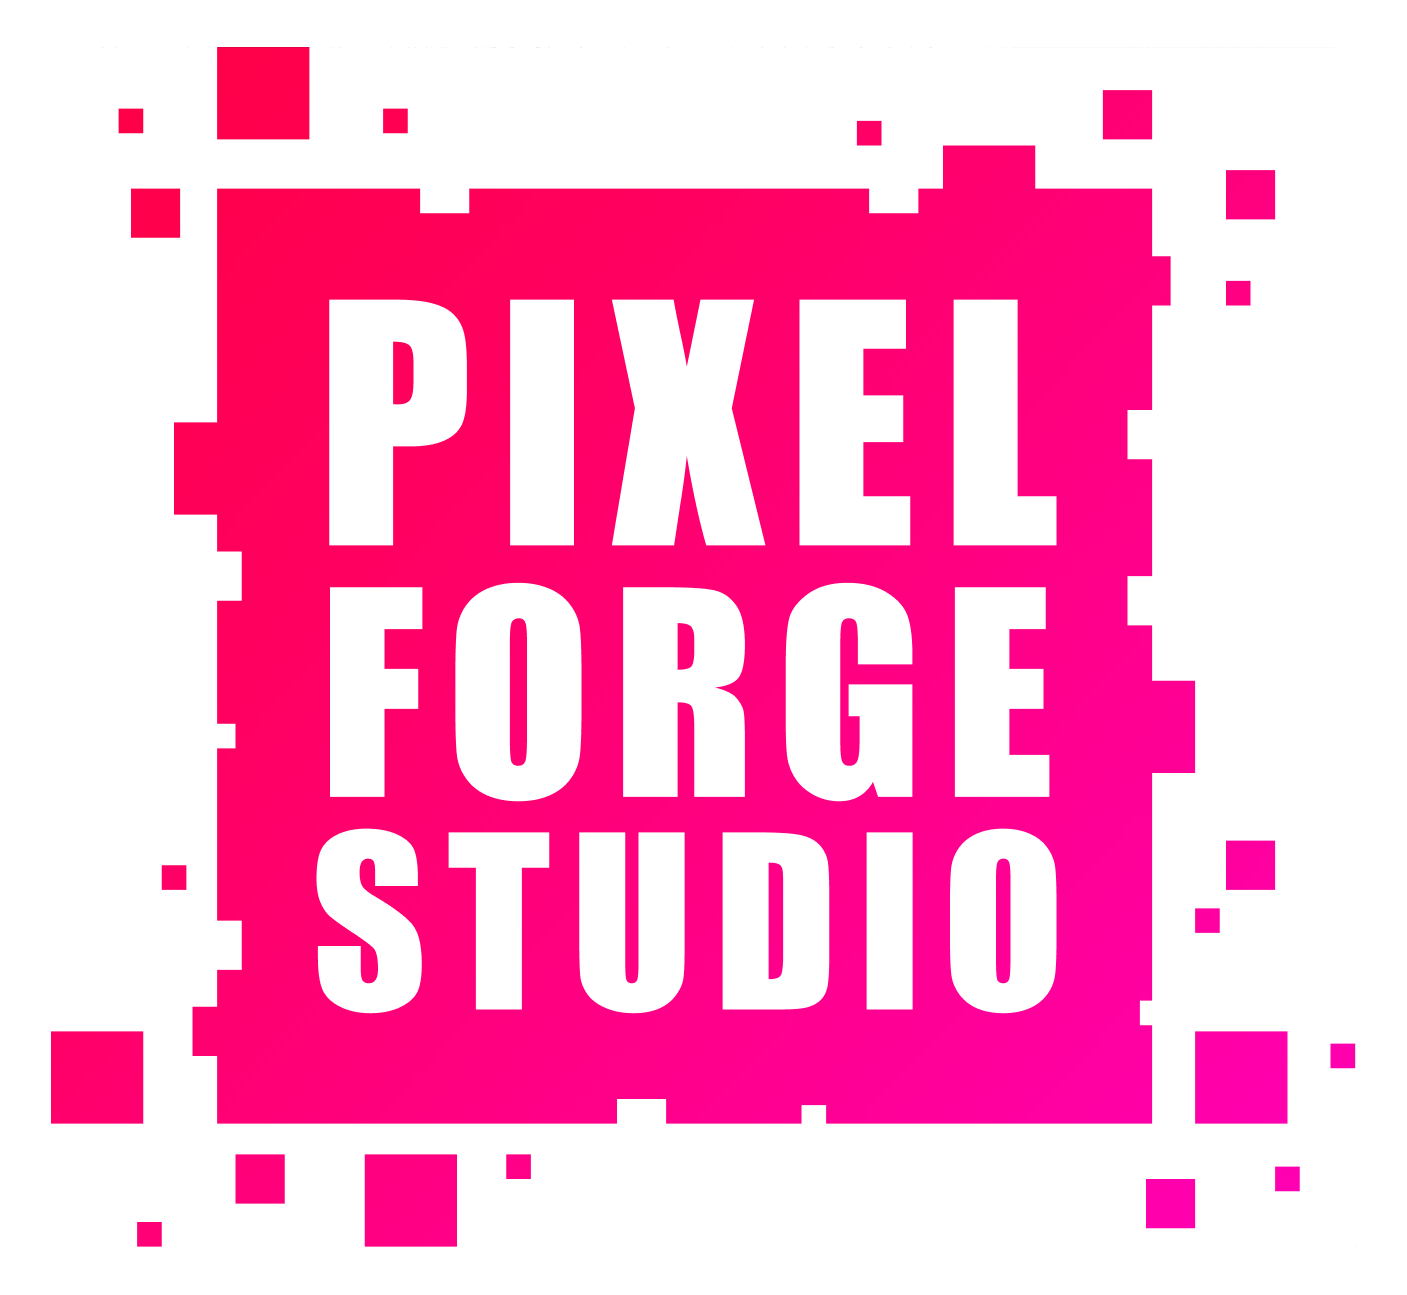 Pixel Forge Studio